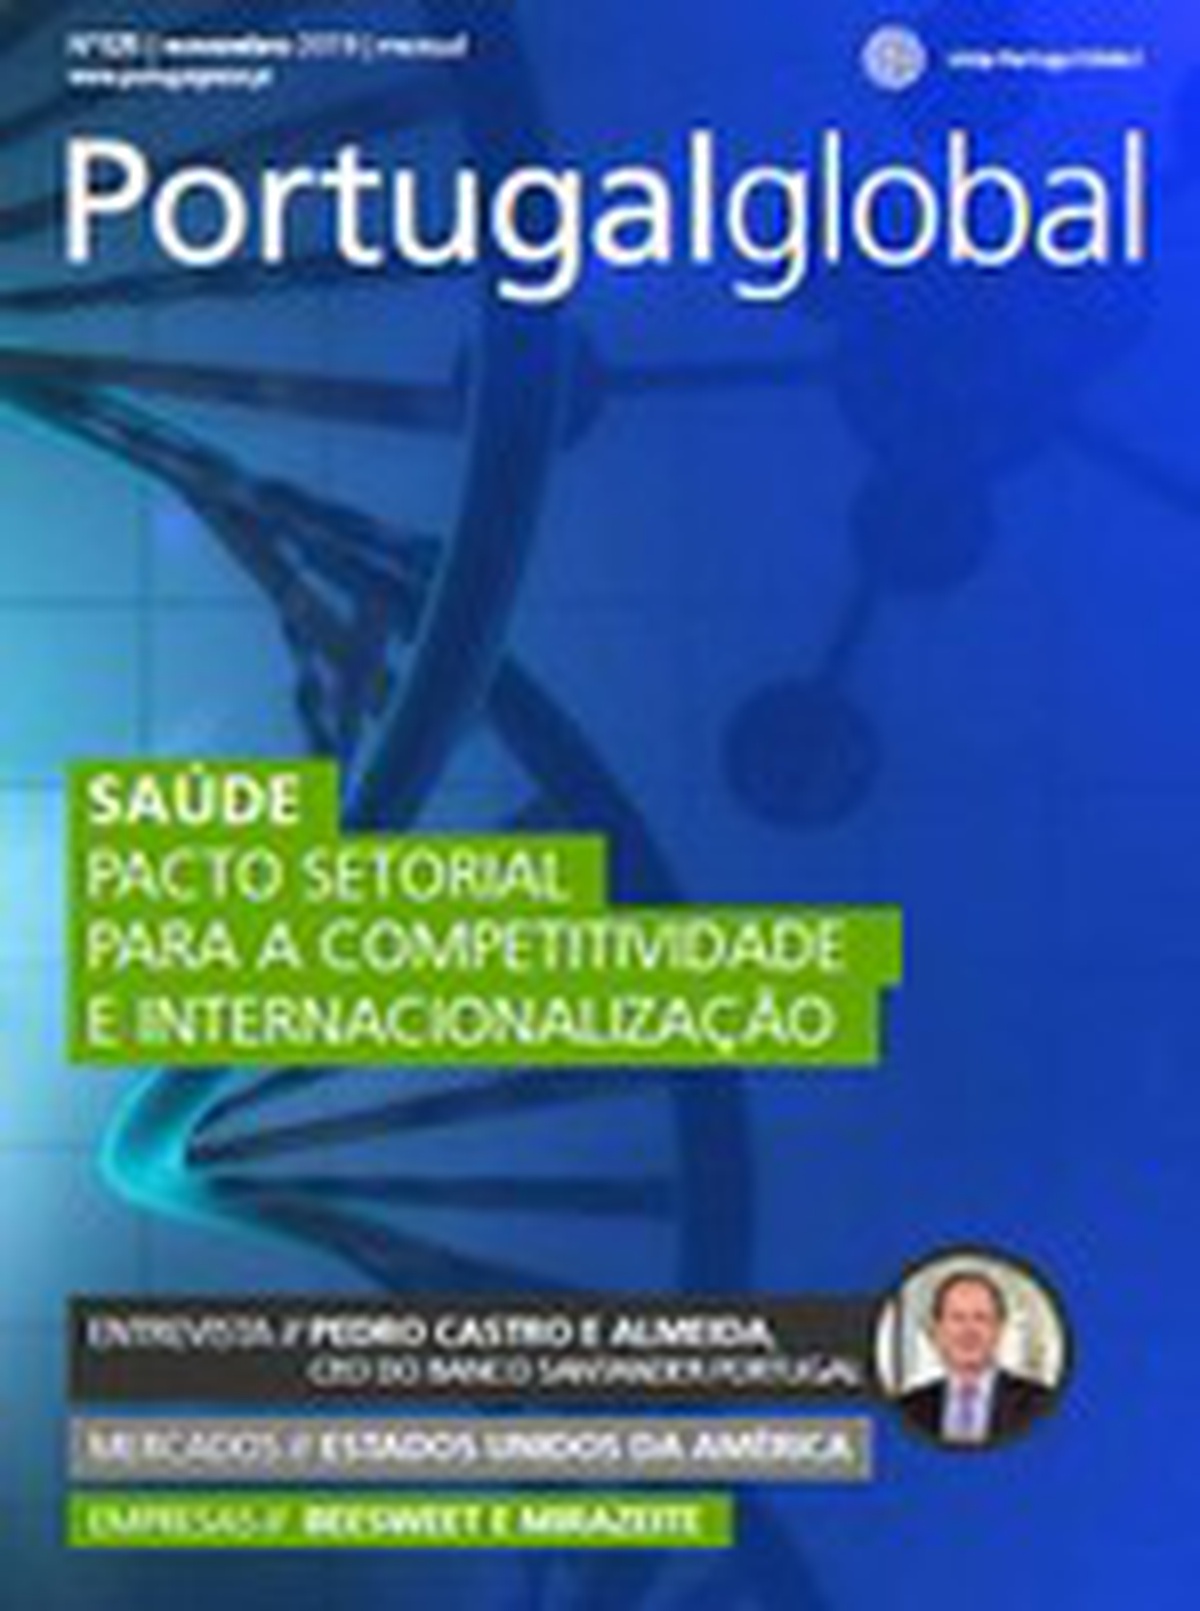 O Setor da Saúde destacado na revista Portugalglobal